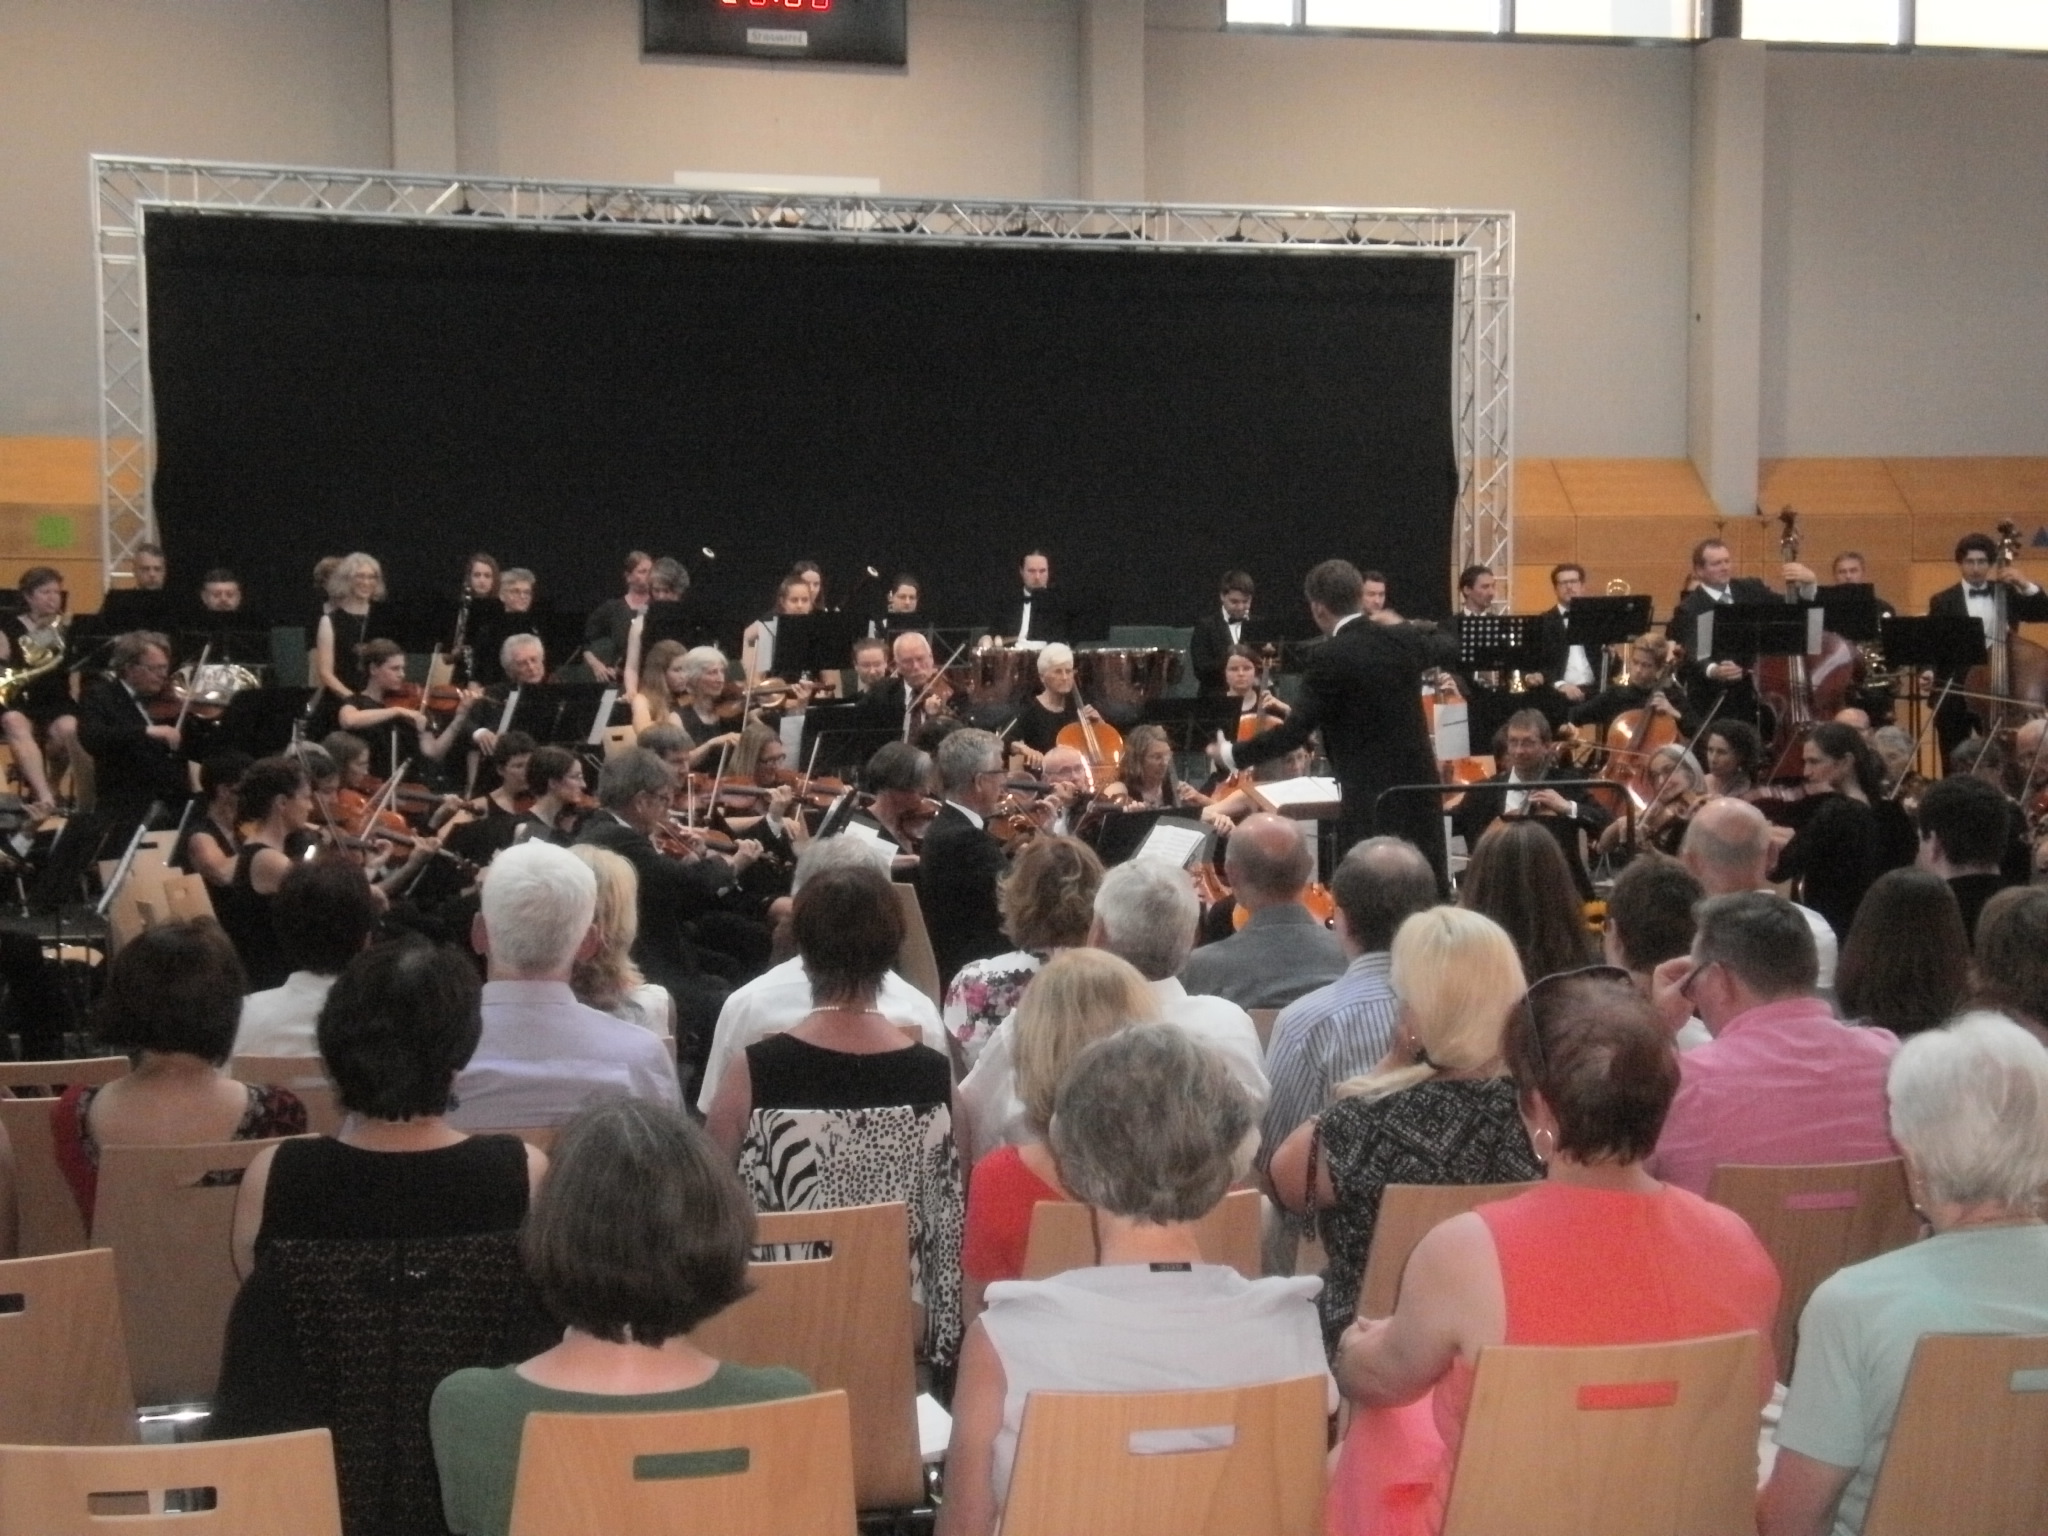 Das Orchester am Singrün Regensburg unter Leitung von Dirigent Michael Falk spielt Humperdincks Ouvertüre zur Märchenoper "Hänsel und Gretel". Fotos: Karl Stumpfi